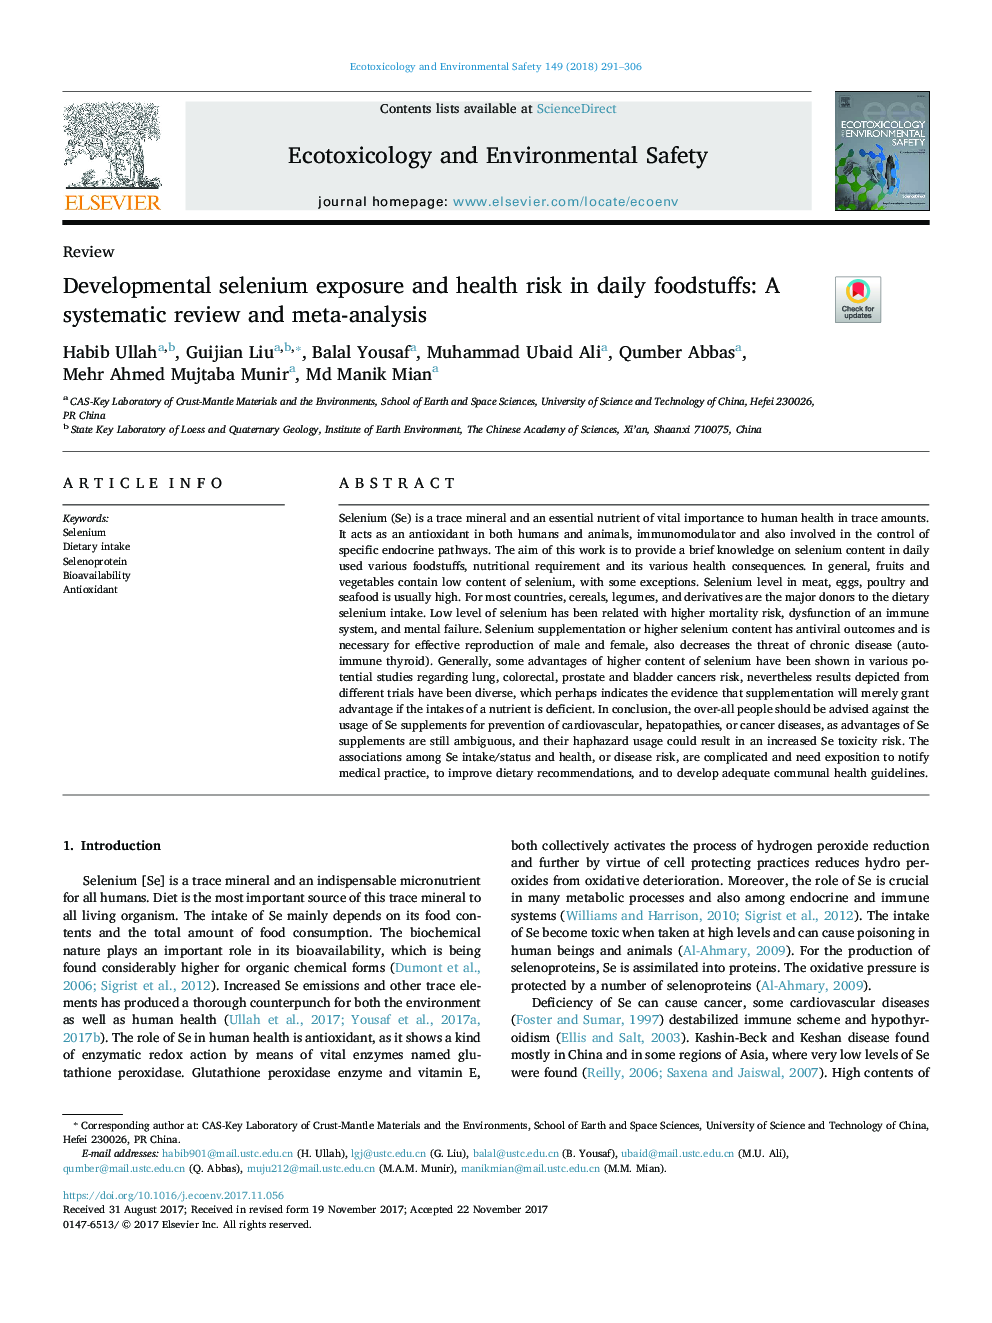 قرار گرفتن در معرض سلنیوم و خطر سلامتی در مواد غذایی روزانه: بررسی منظم و متاآنالیز 